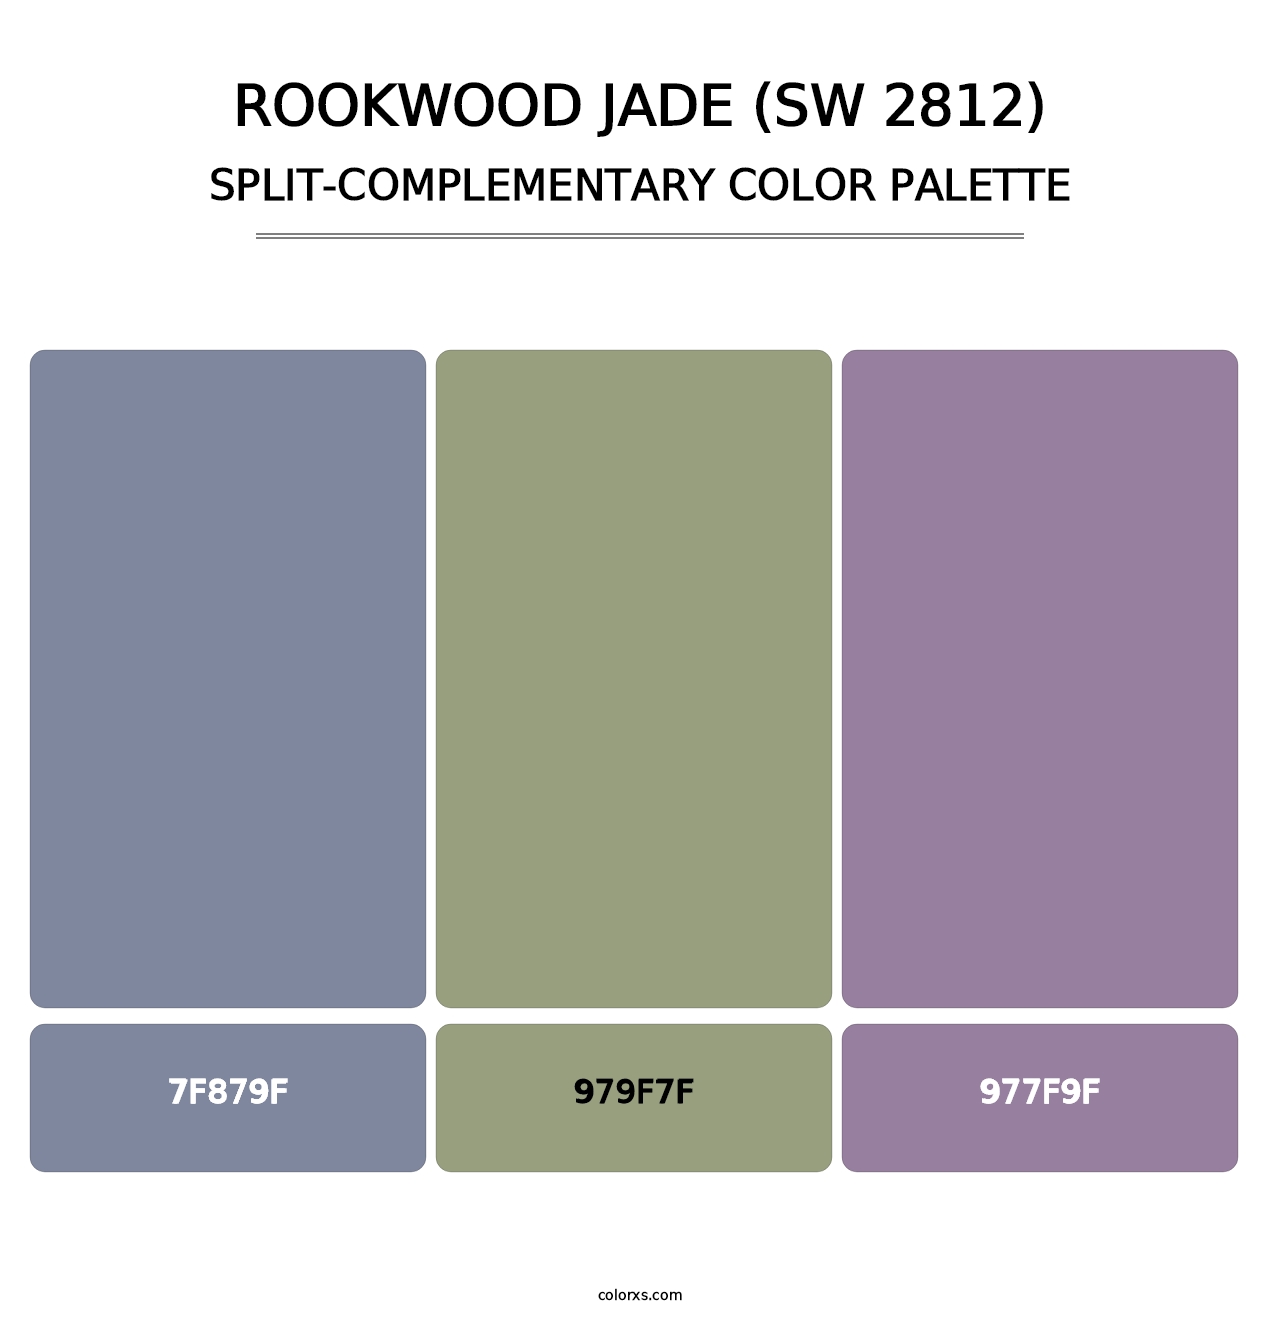 Rookwood Jade (SW 2812) - Split-Complementary Color Palette